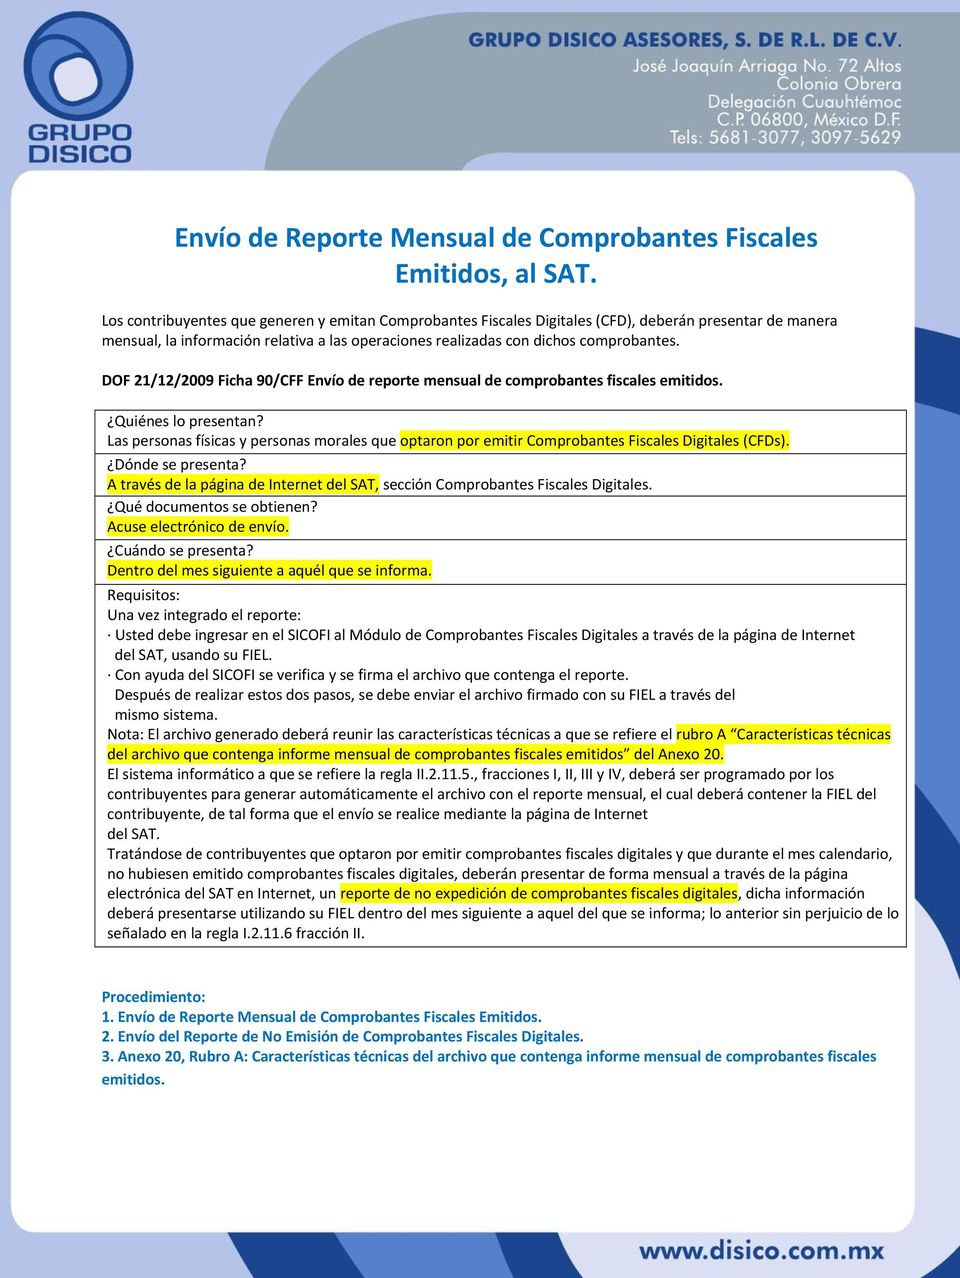 DOF 21/12/2009 Ficha 90/CFF Envío de reporte mensual de comprobantes fiscales emitidos. Quiénes lo presentan?